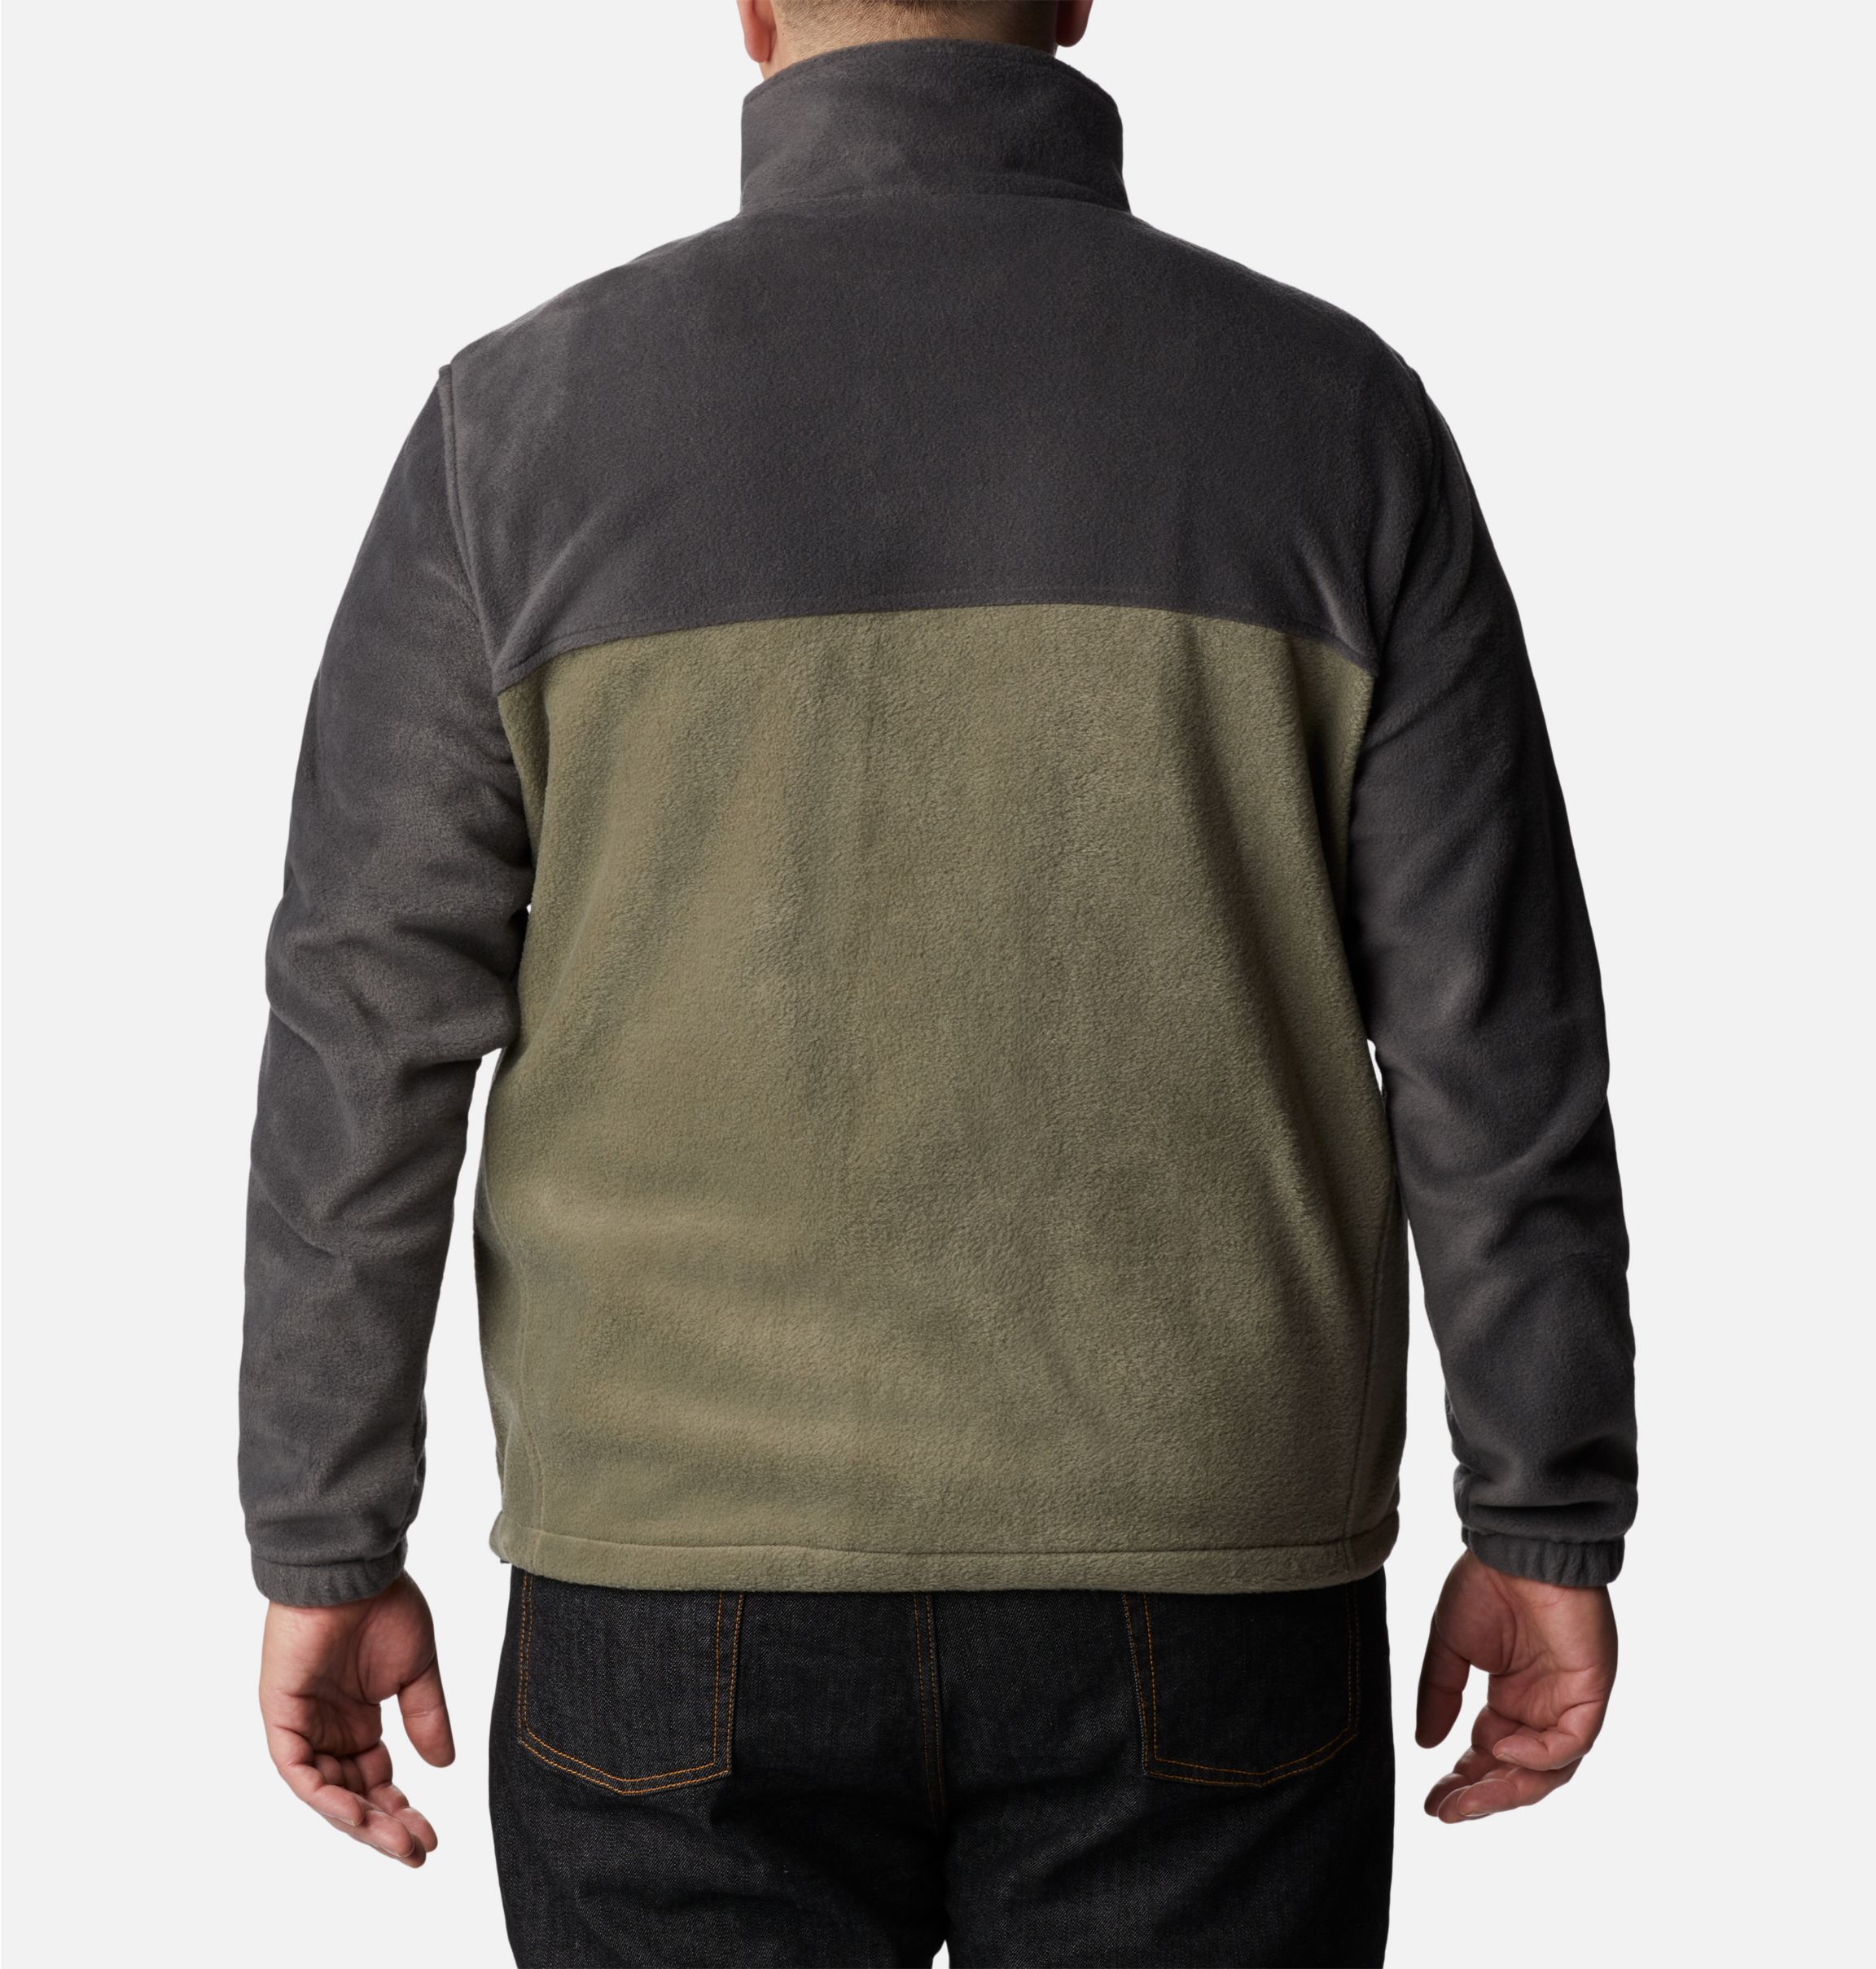  Columbia Full-Zip Fleece Jacket - Men's 6404-M